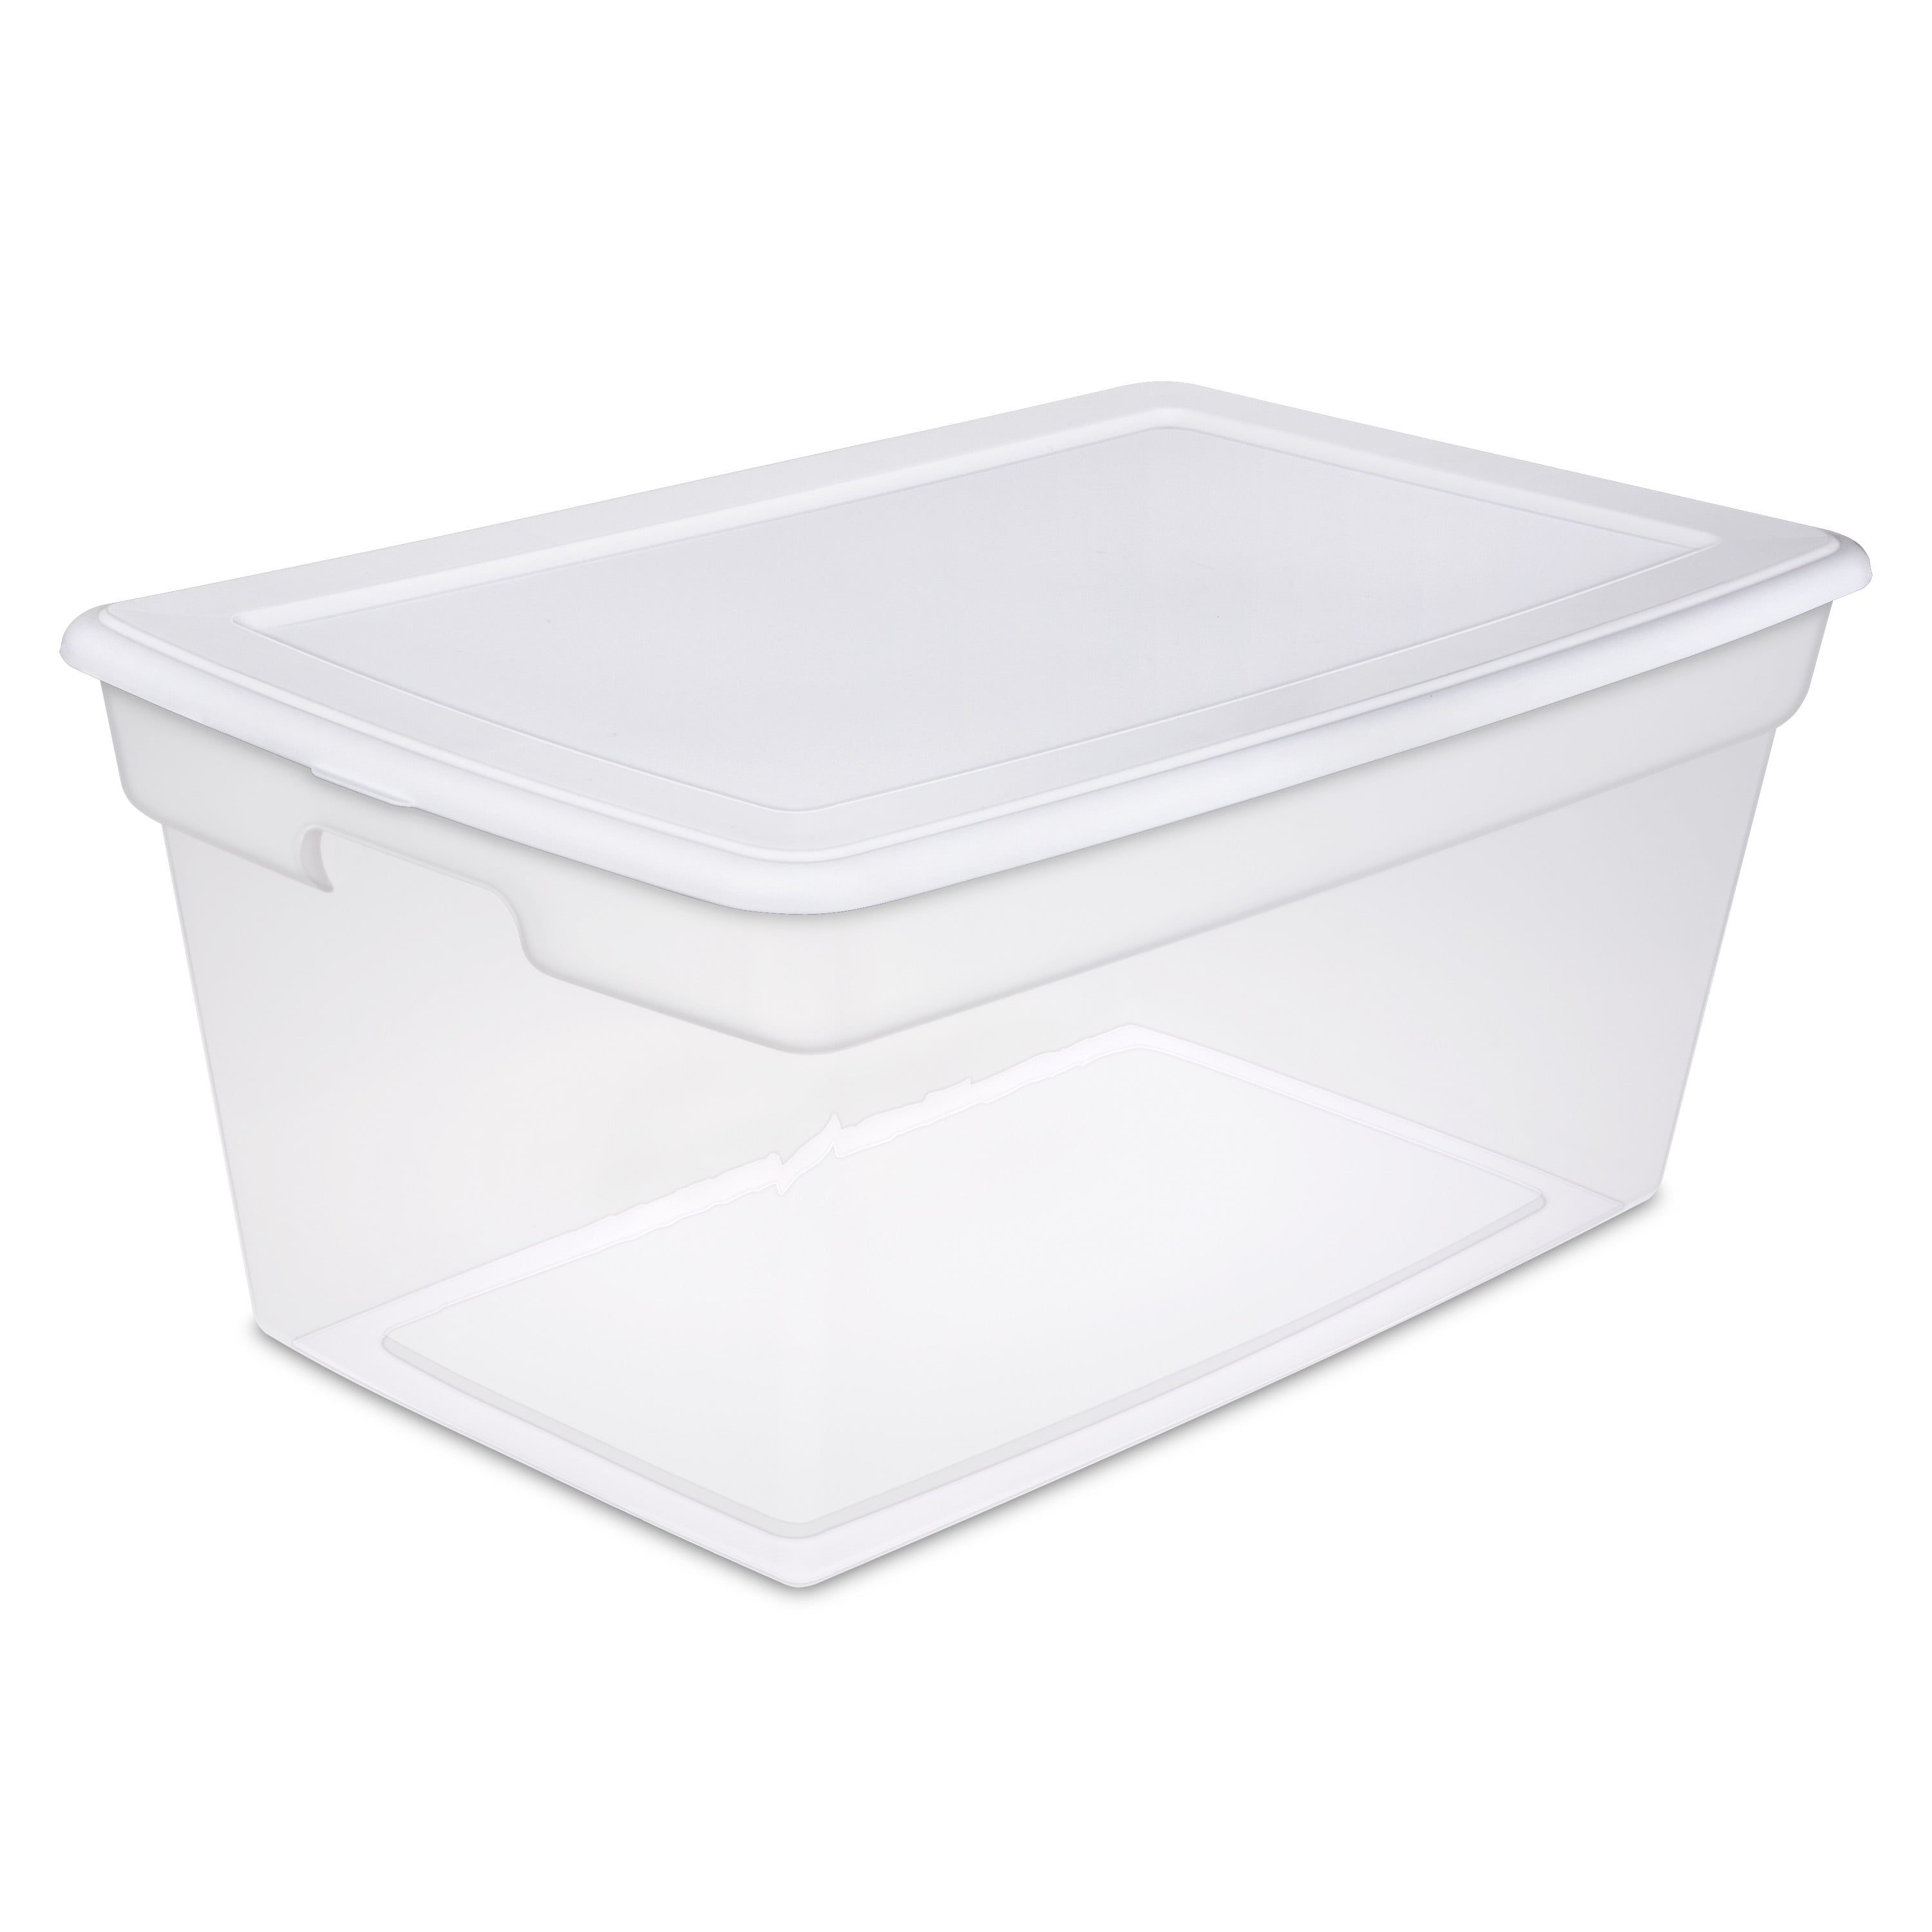 Sterilite 58 Qt Storage Box White, Clear Storage Boxes For Handbags